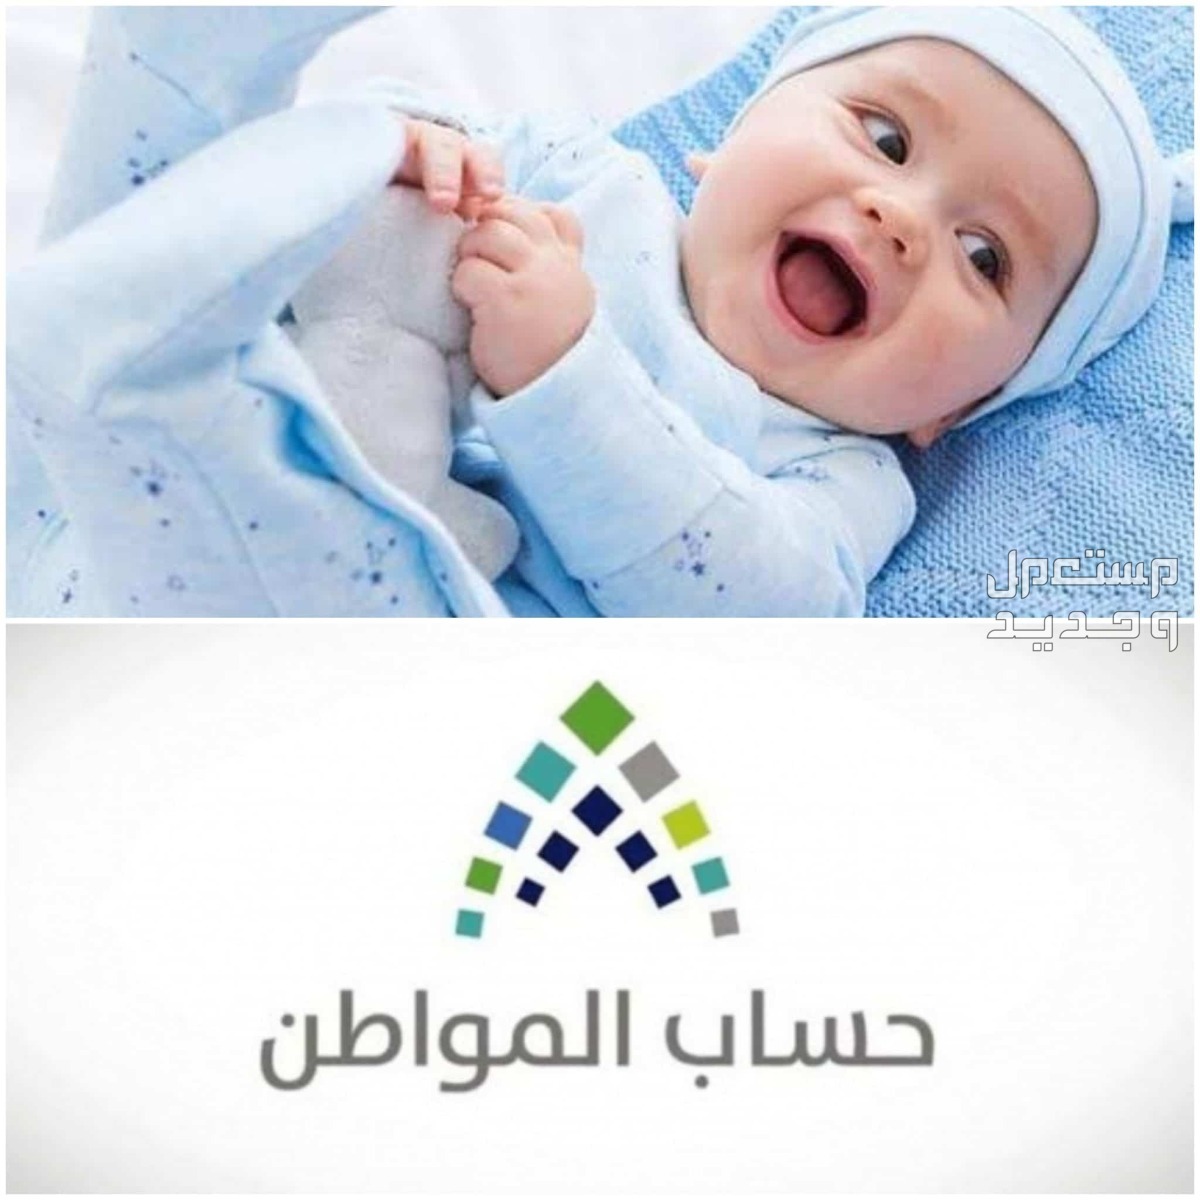 طريقة تسجيل المولود الجديد في حساب المواطن 1445 في لبنان تسجيل المولود الجديد في حساب المواطن